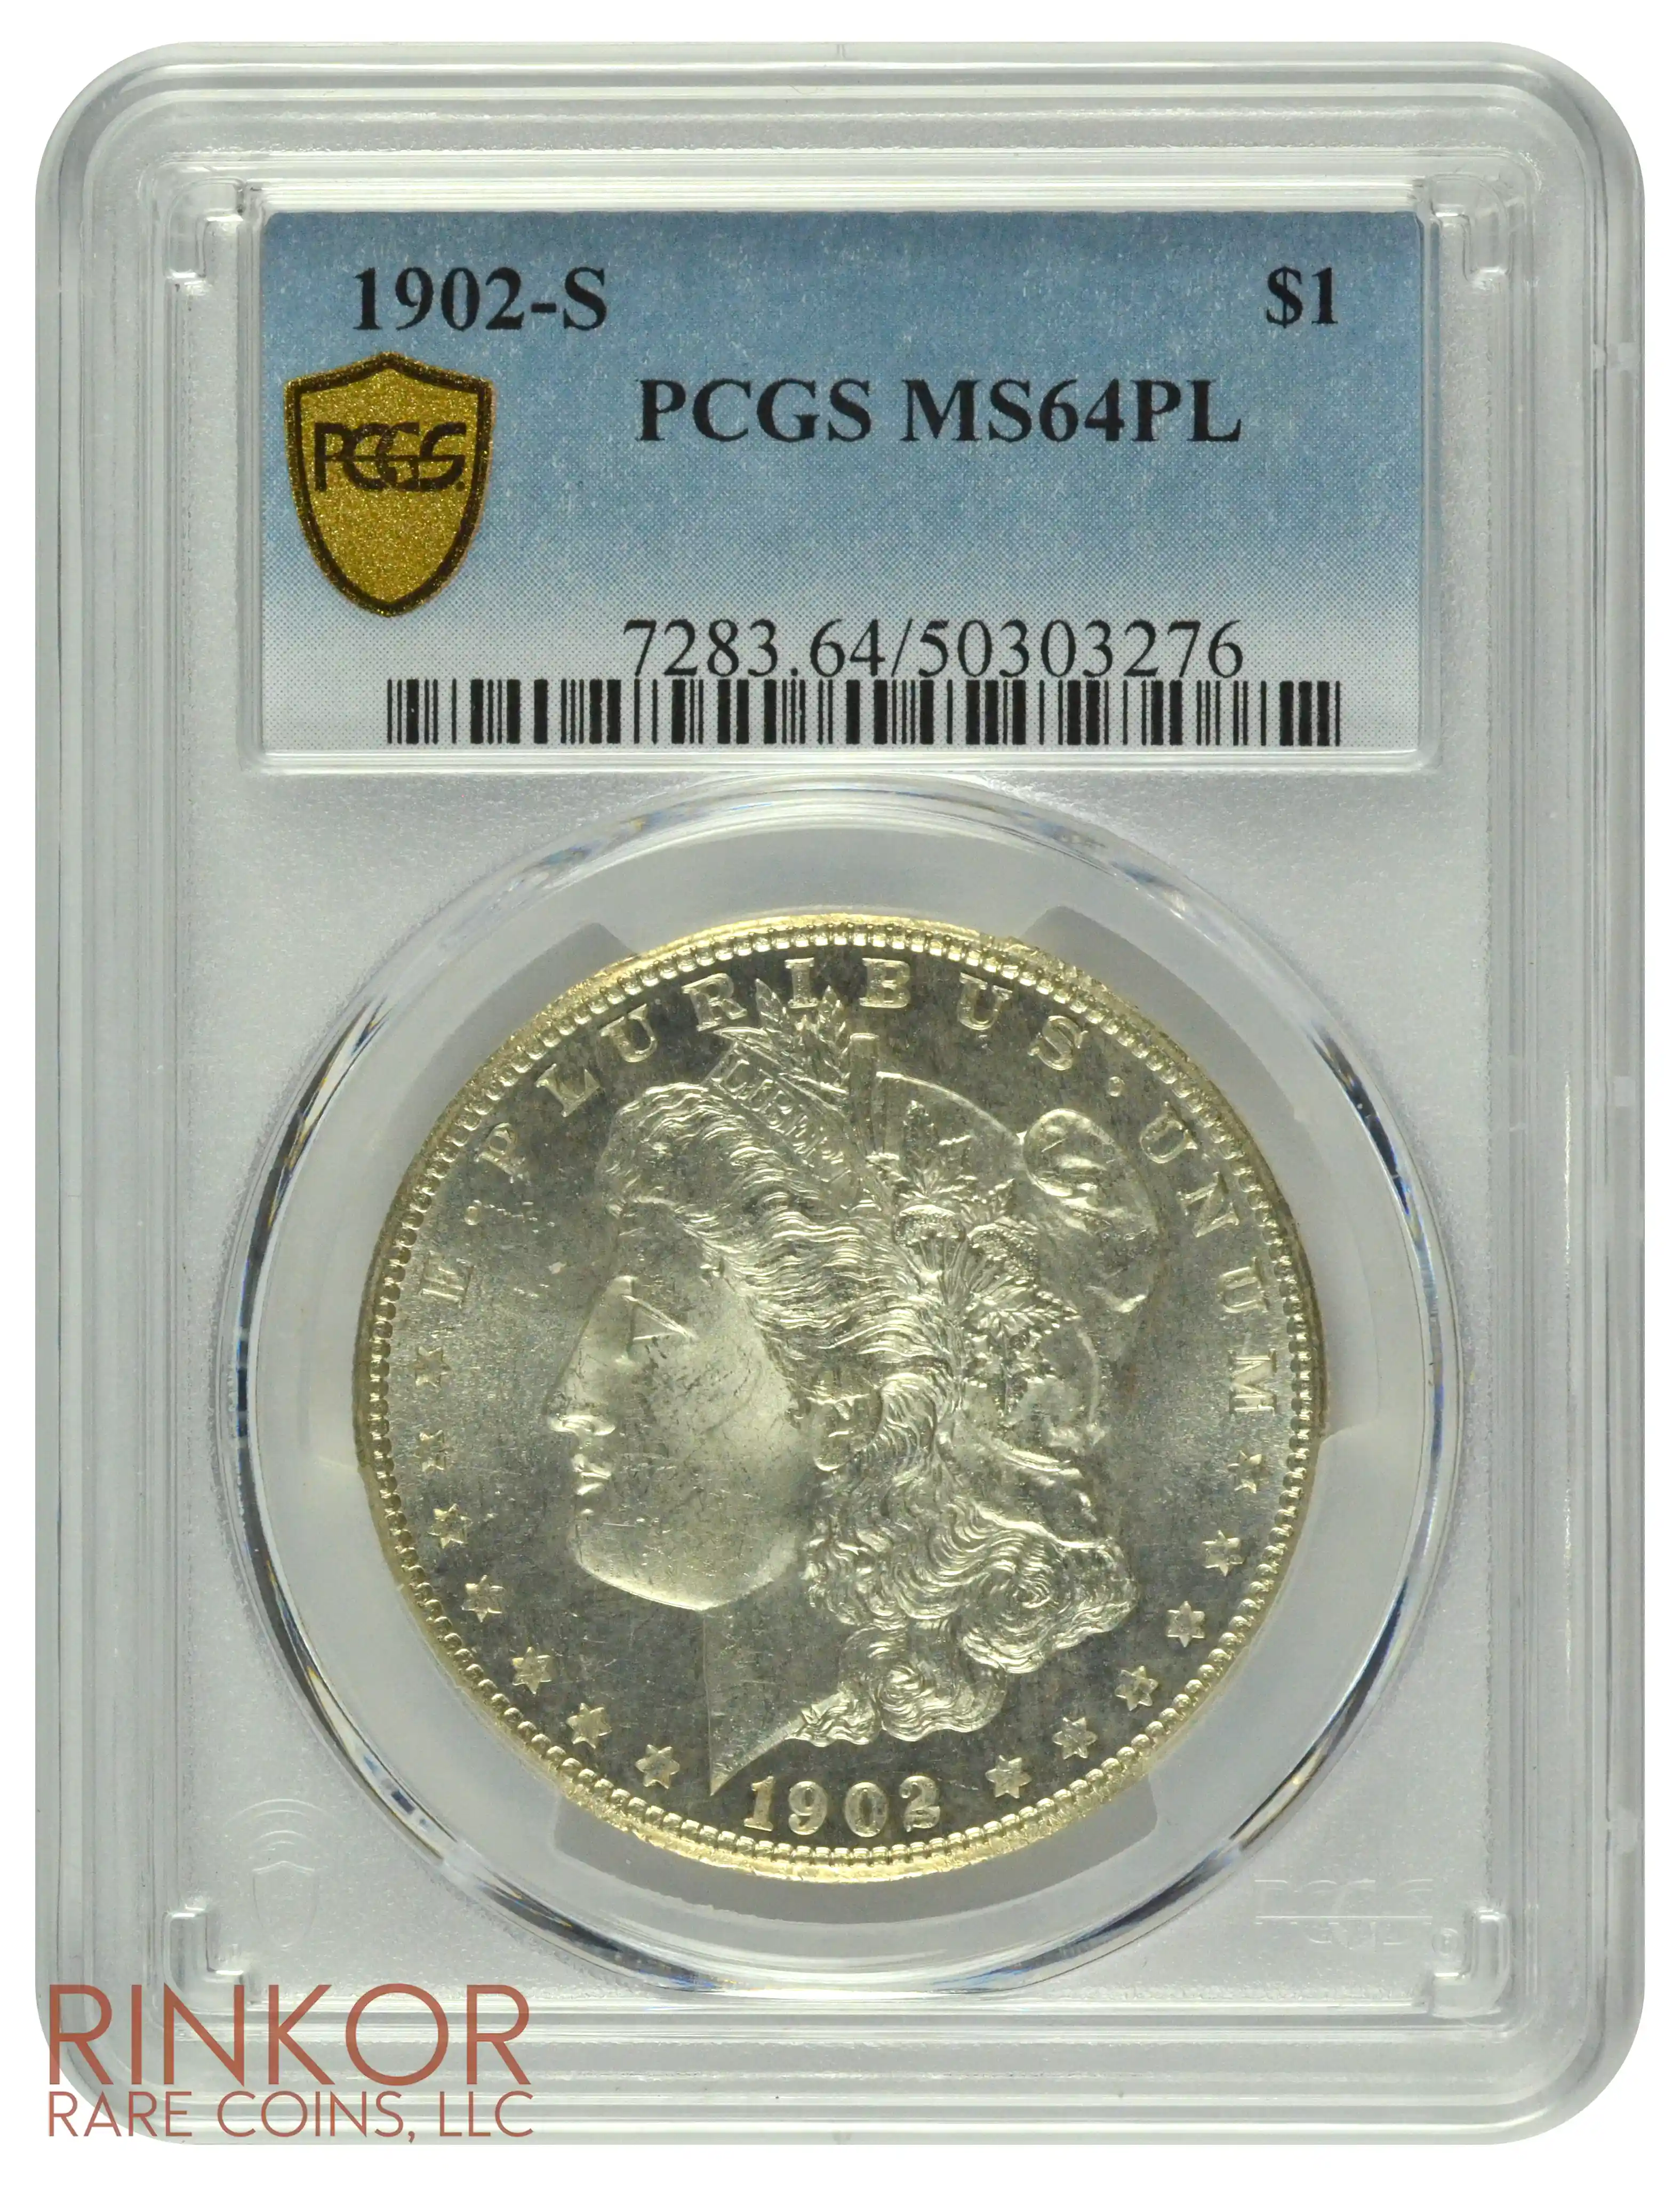 1902-S $1 PCGS MS 64 PL